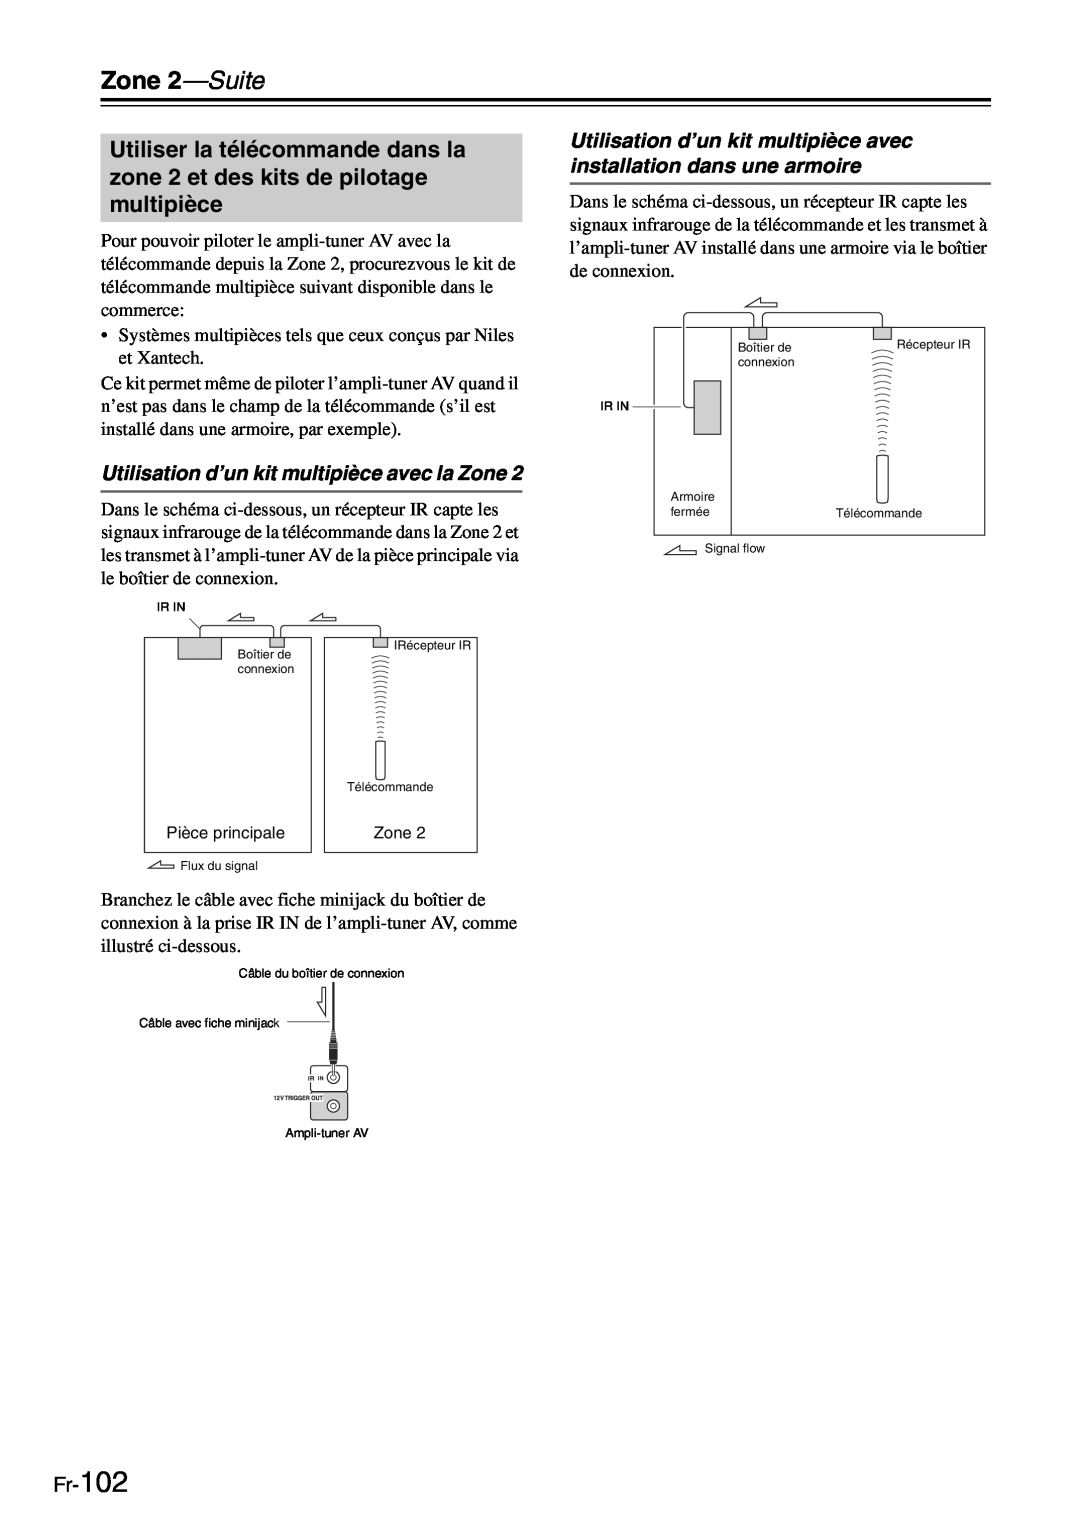 Onkyo TX-SR705 manual Utilisation d’un kit multipièce avec la Zone, Fr-102, Zone 2—Suite 